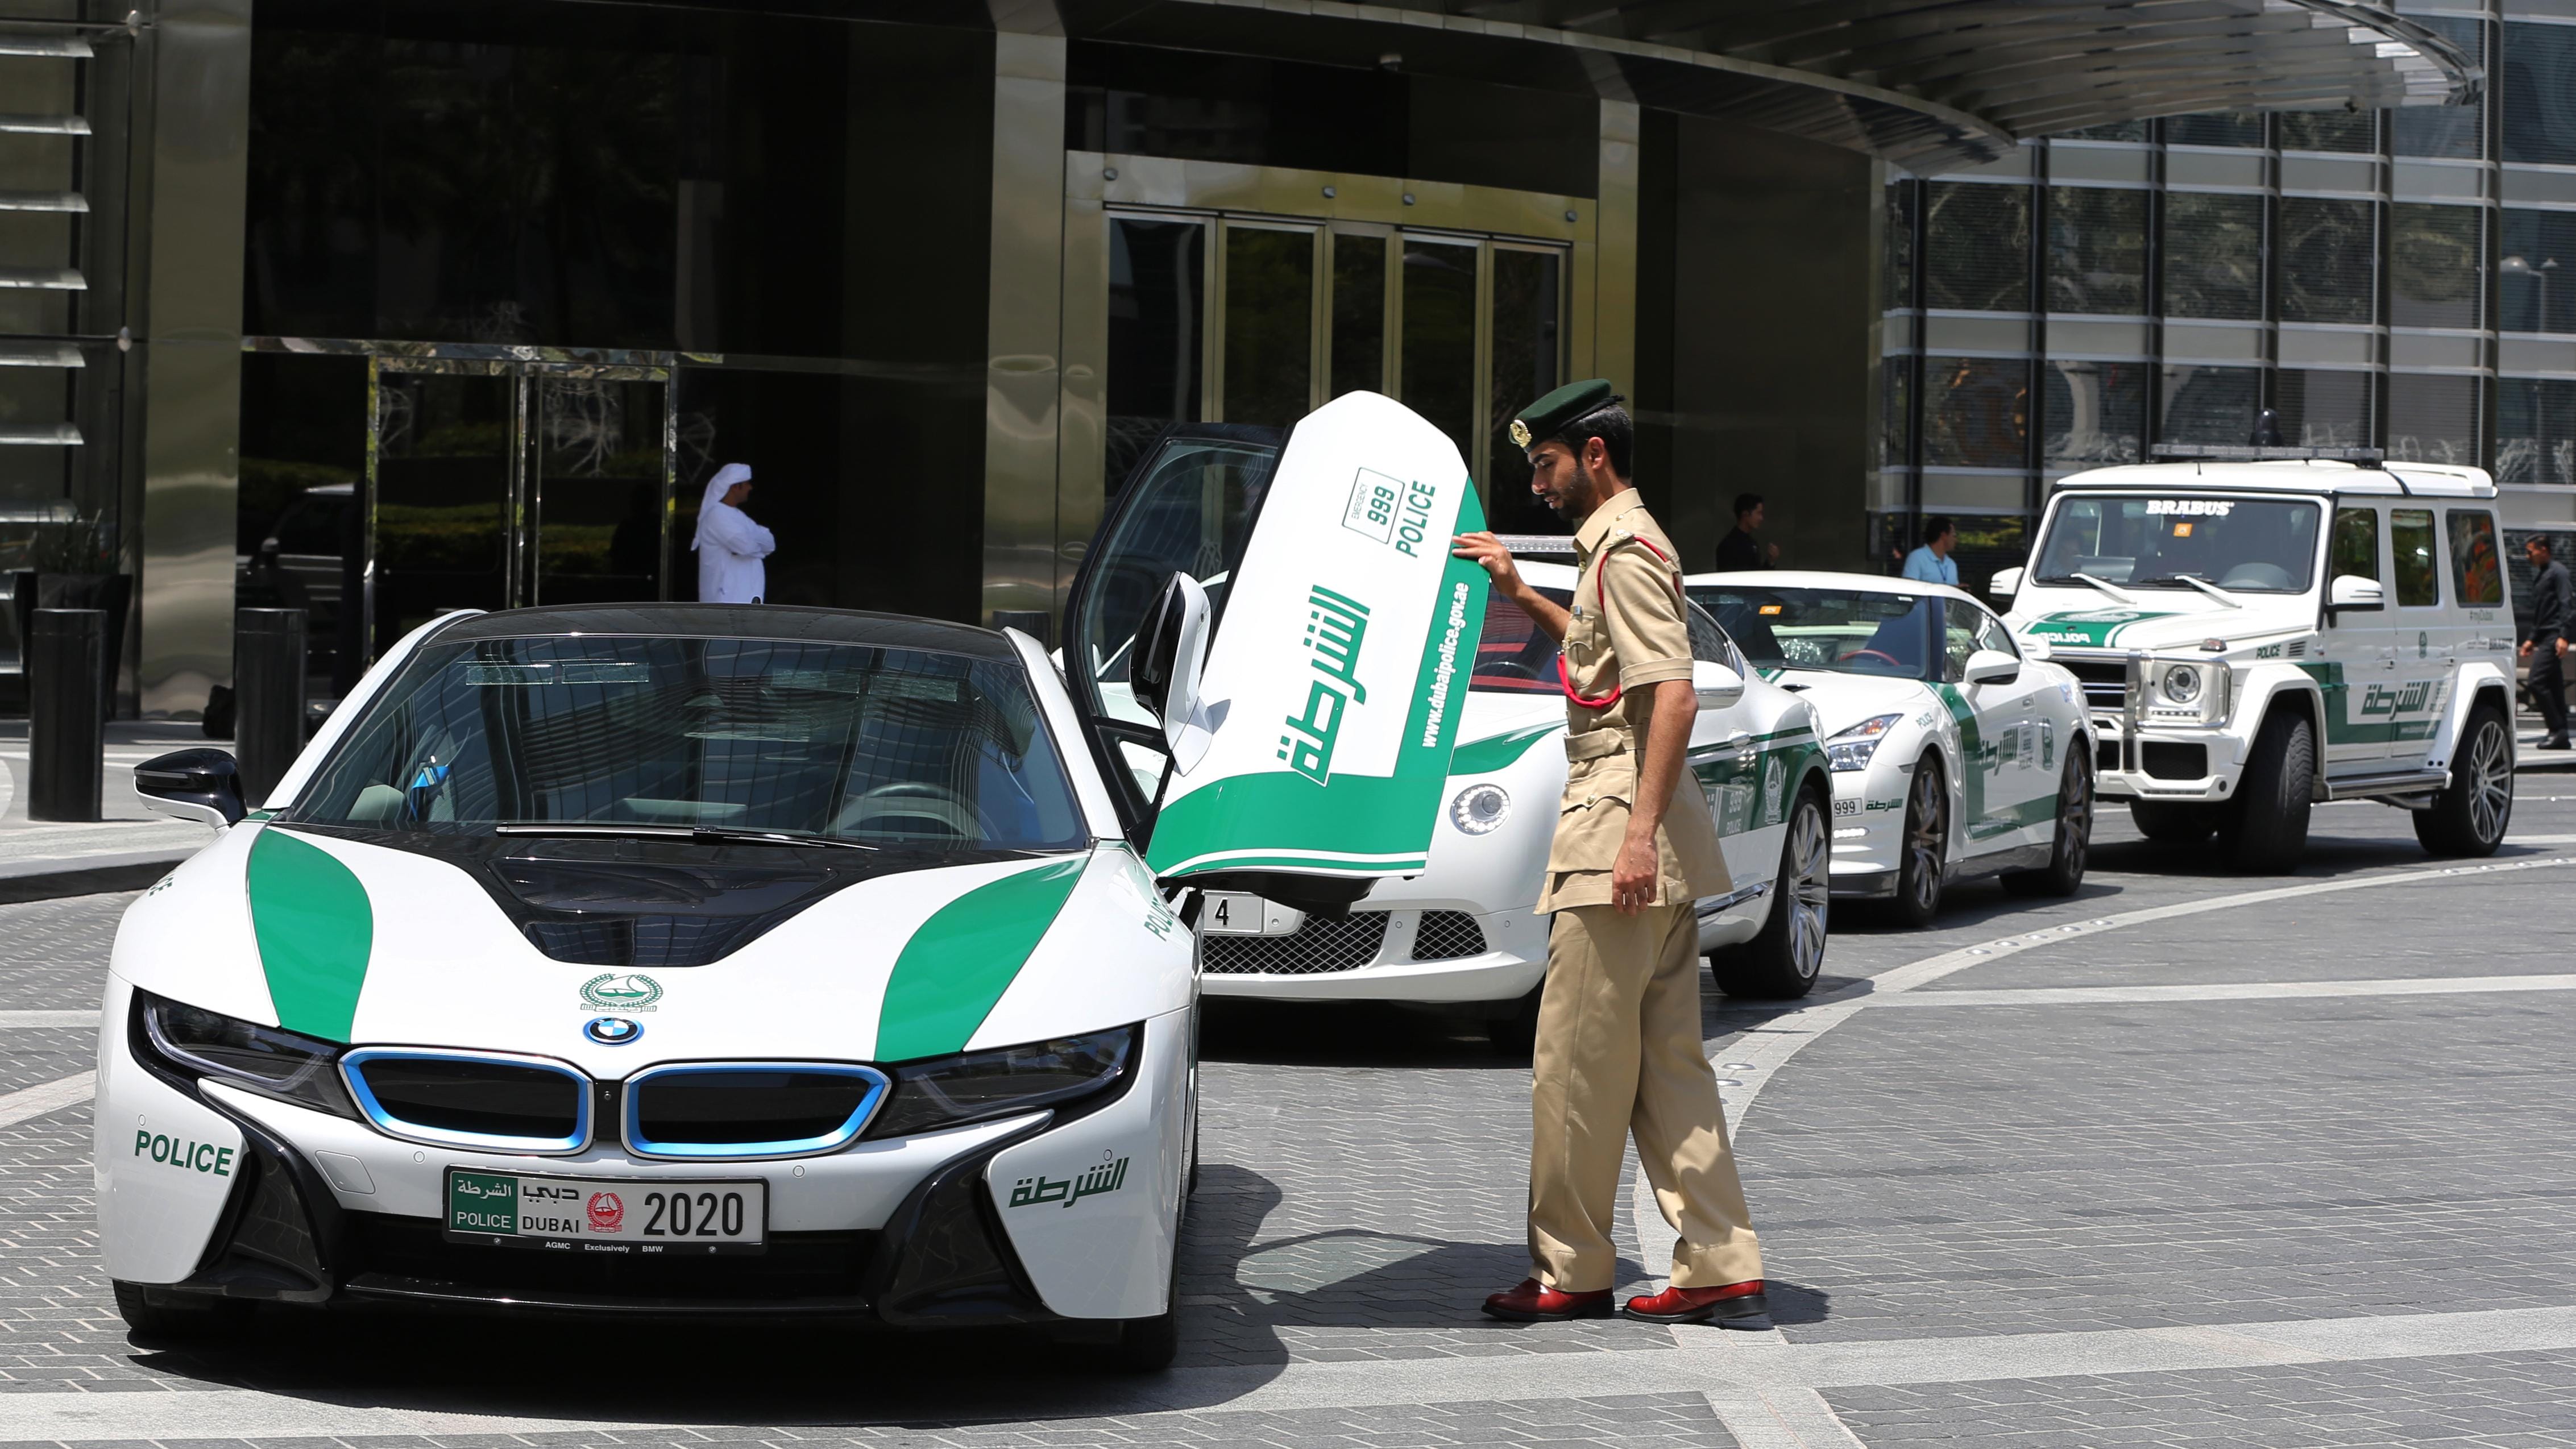 15 điều thú vị về đội siêu xe của cảnh sát Dubai | AutoMotorVN